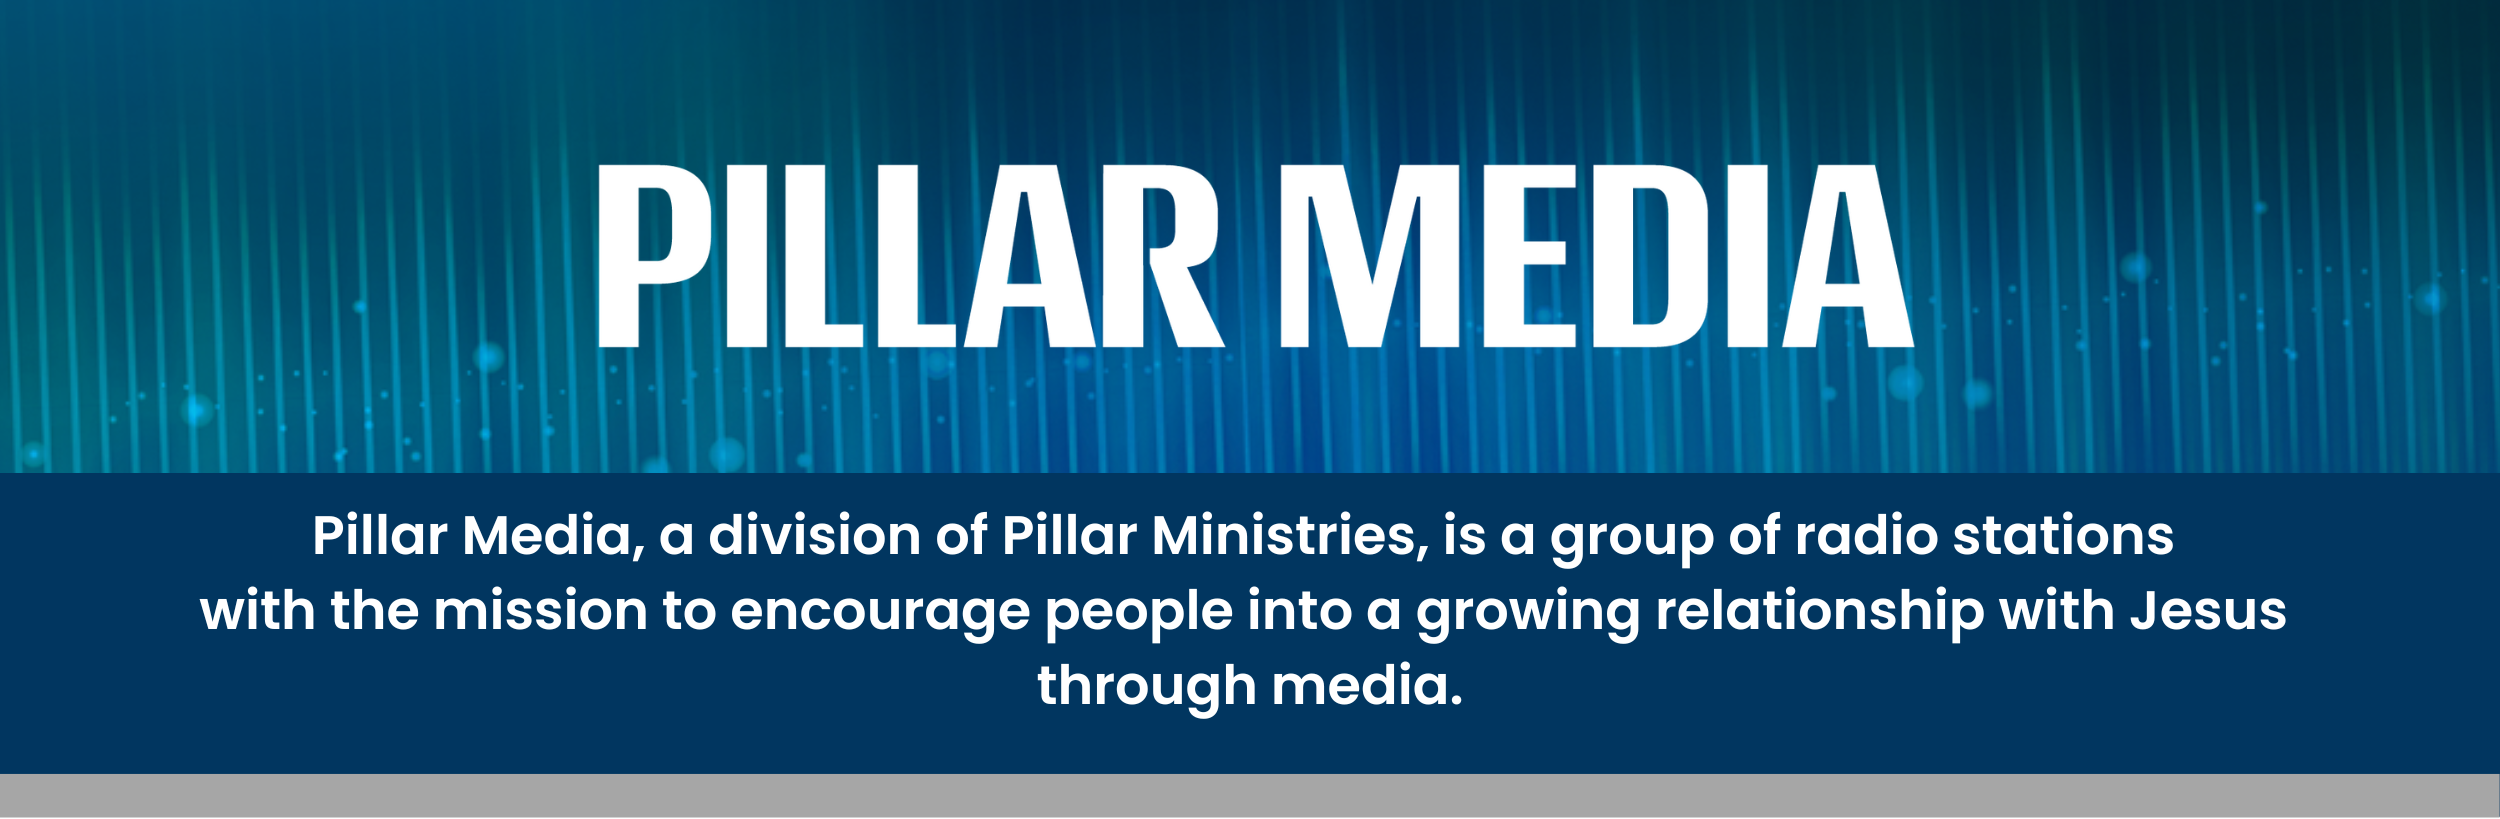 Pillar_Media_Header